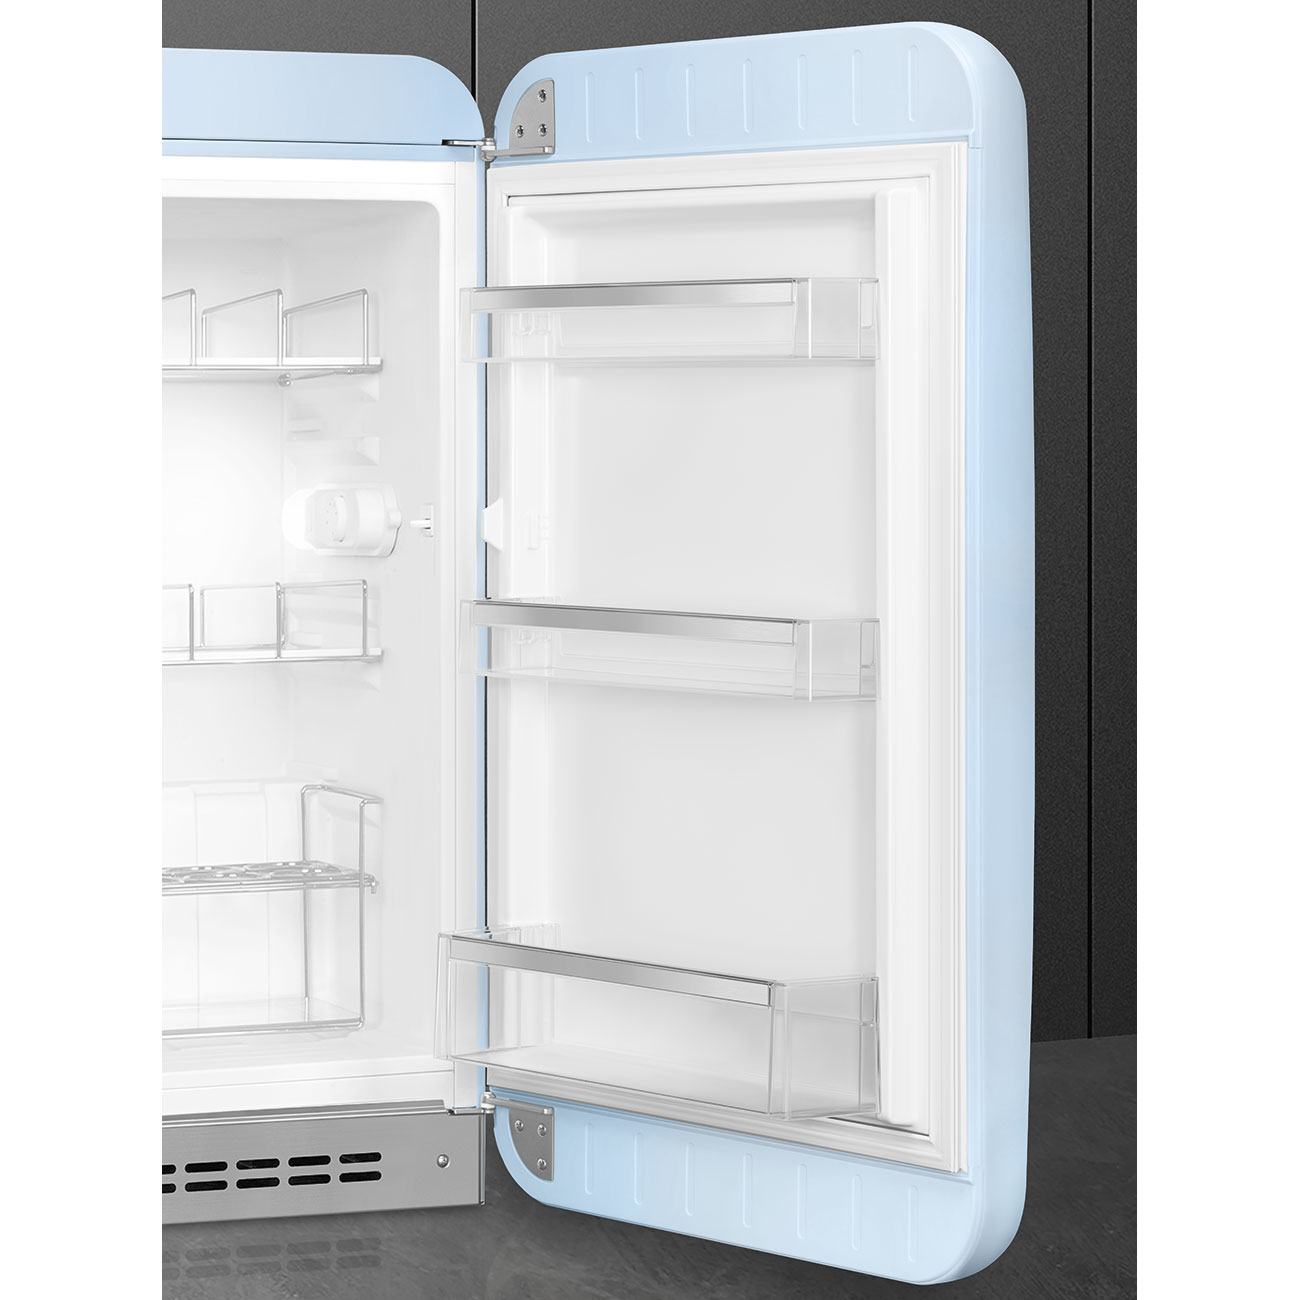 Pastel blue refrigerator - Smeg_7